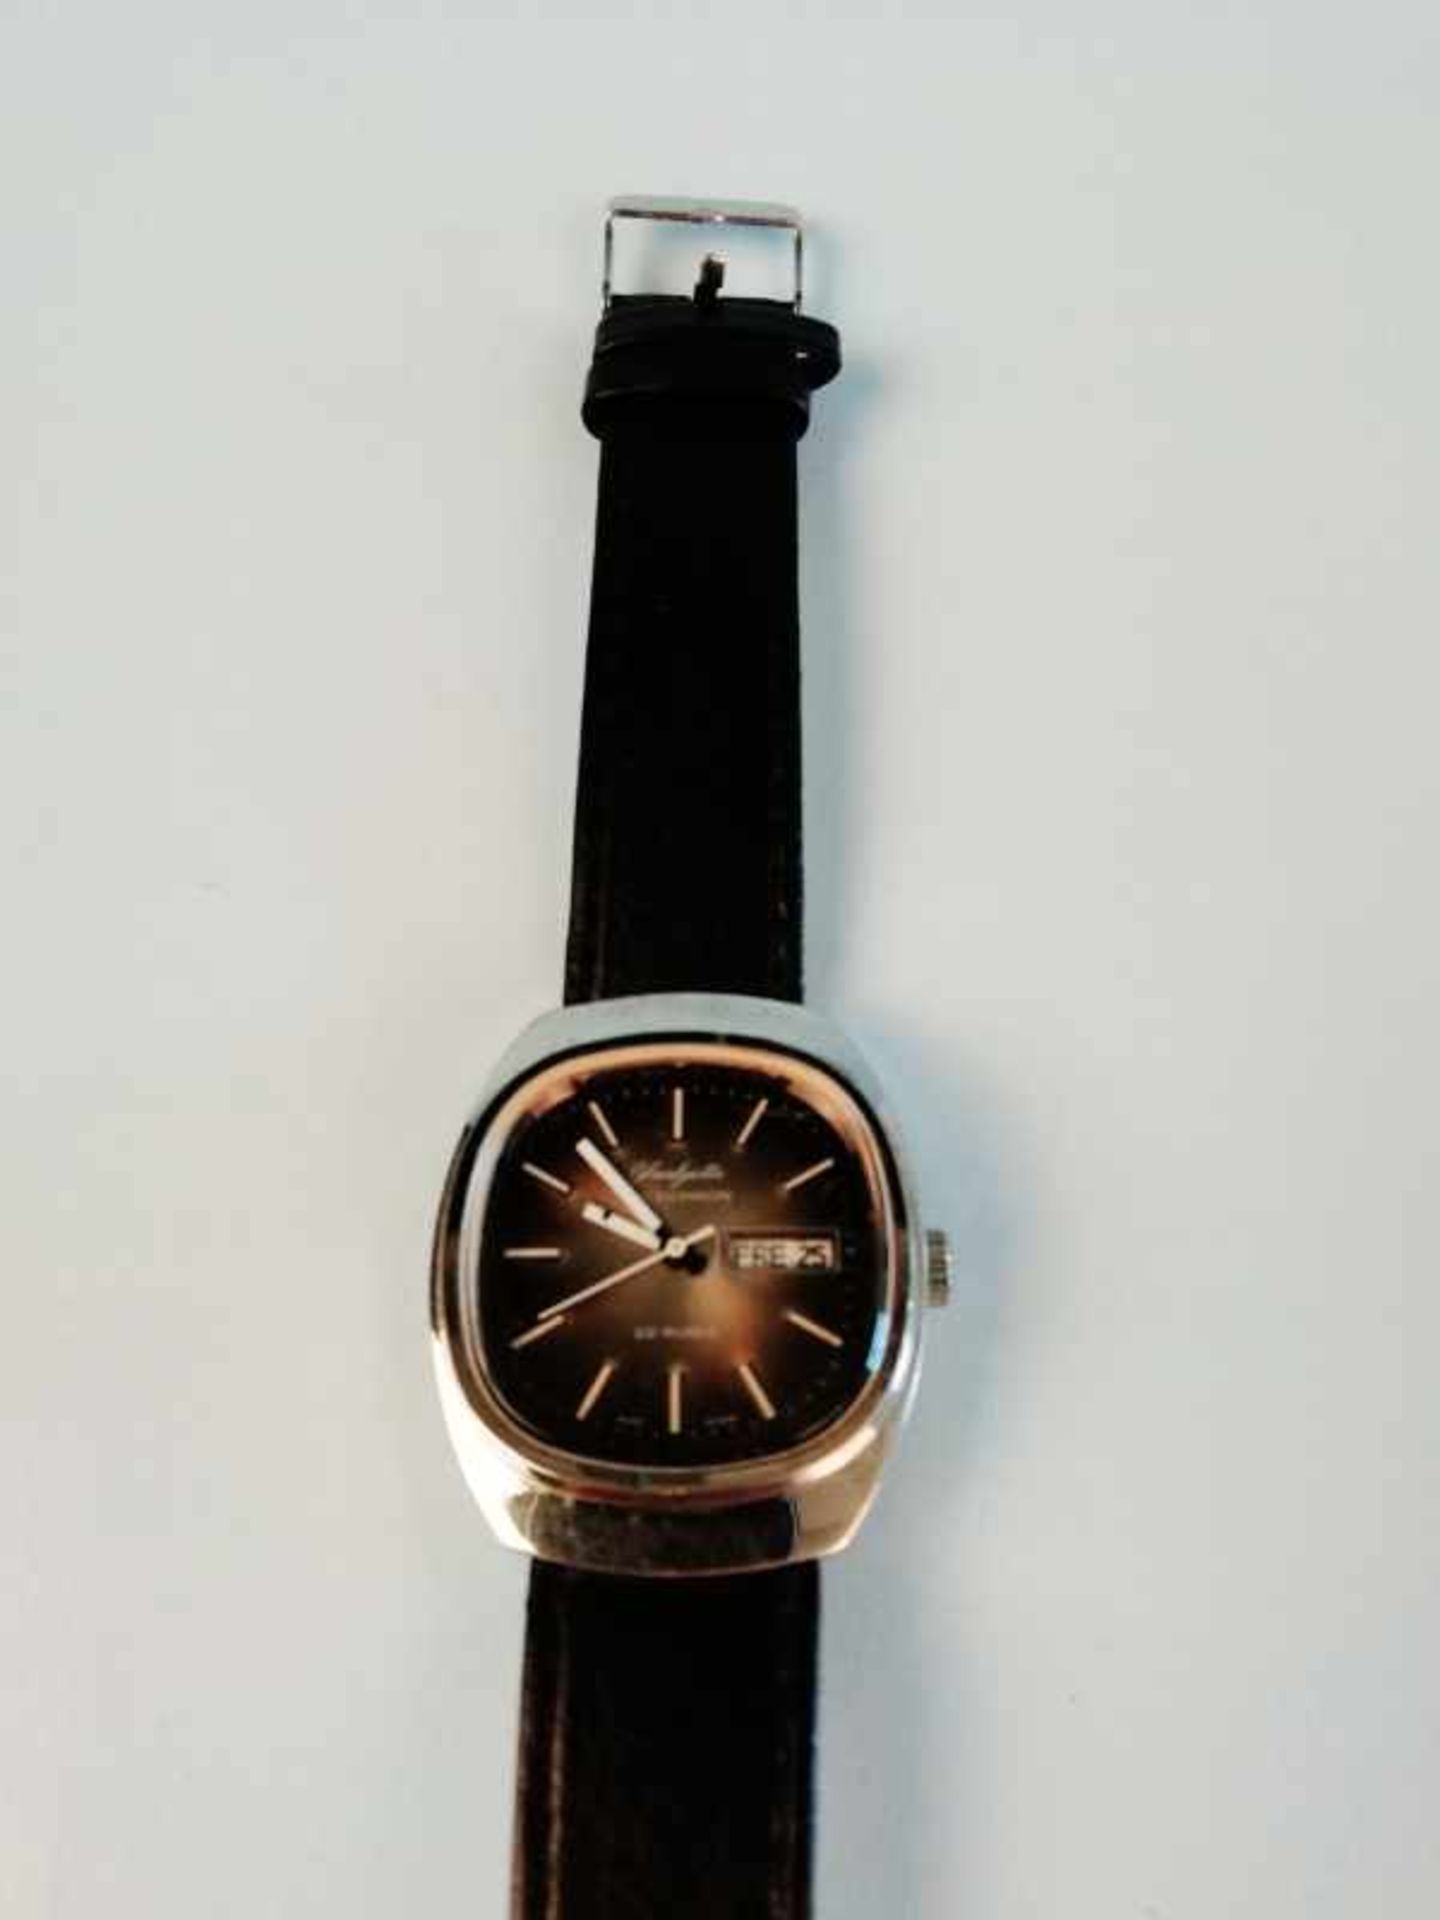 Armbanduhr "Glashütte Spezichron"Metall, Vintage, Automatik, Datum, 63,6g, Werkservice wird